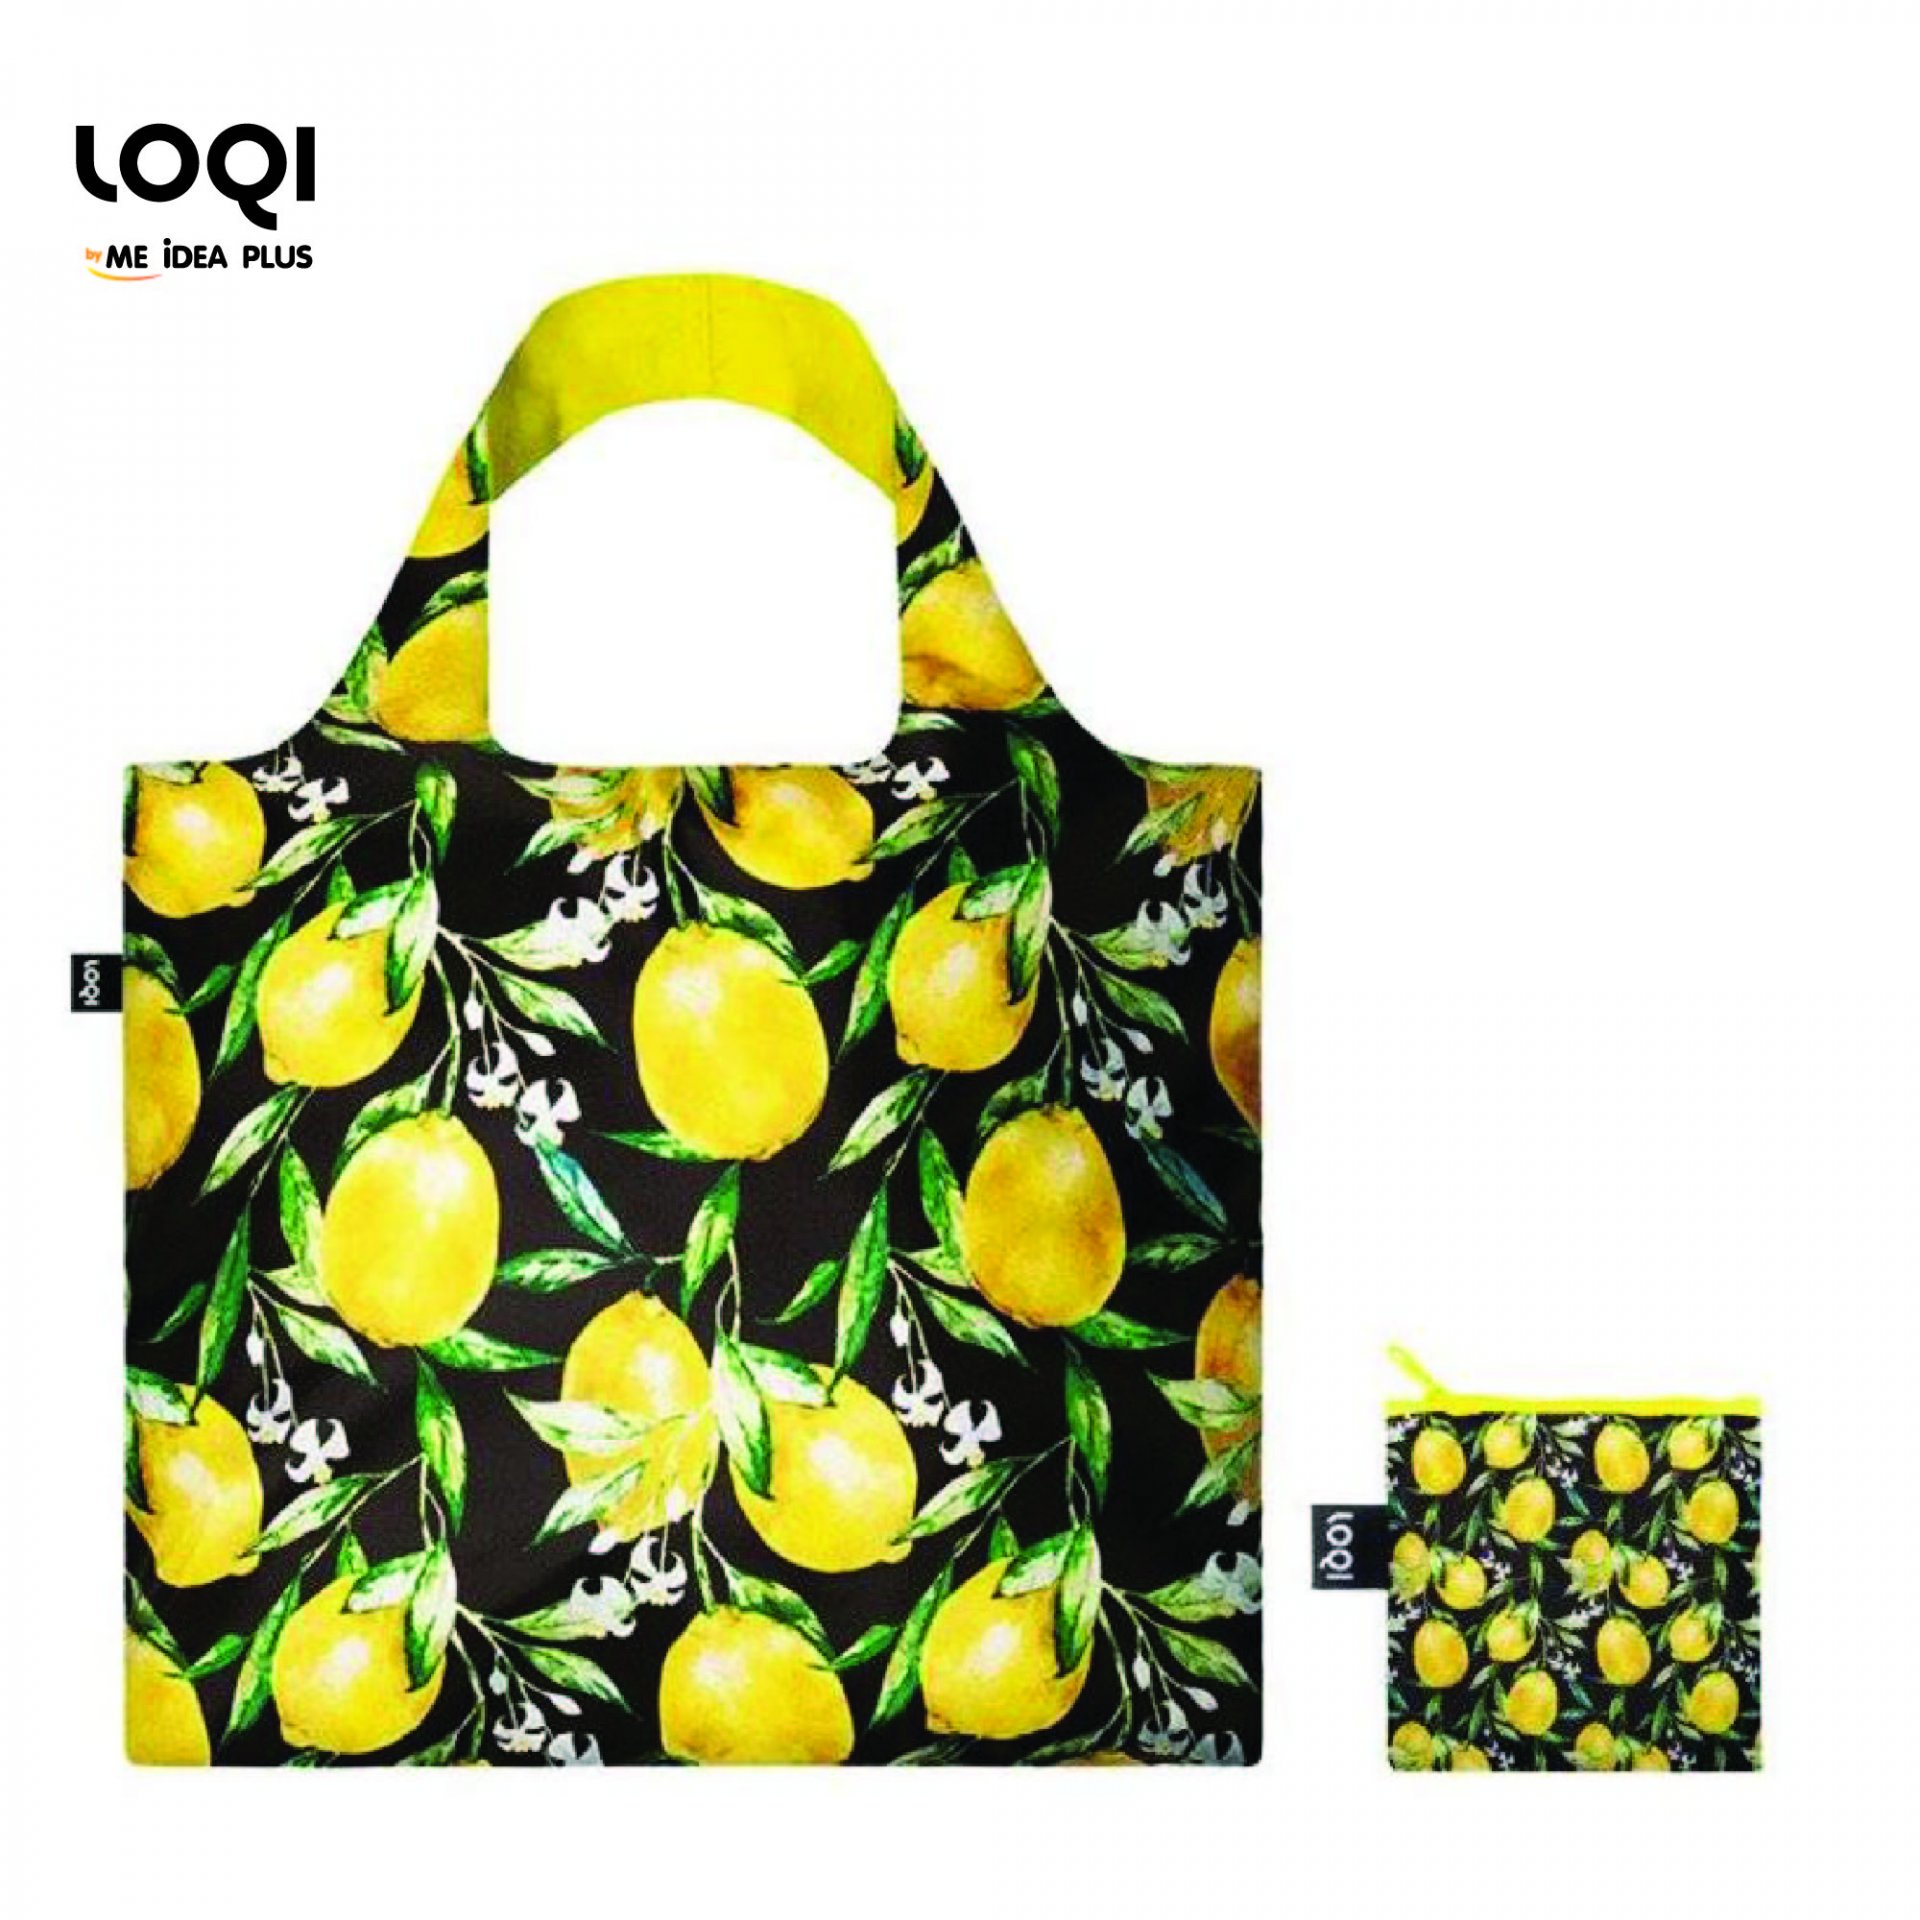 กระเป๋าผ้าแฟชั่นแบรนด์LOQI รุ่น Juicy Lemons ใบใหญ่1ใบ+ใบเล็ก1ใบ